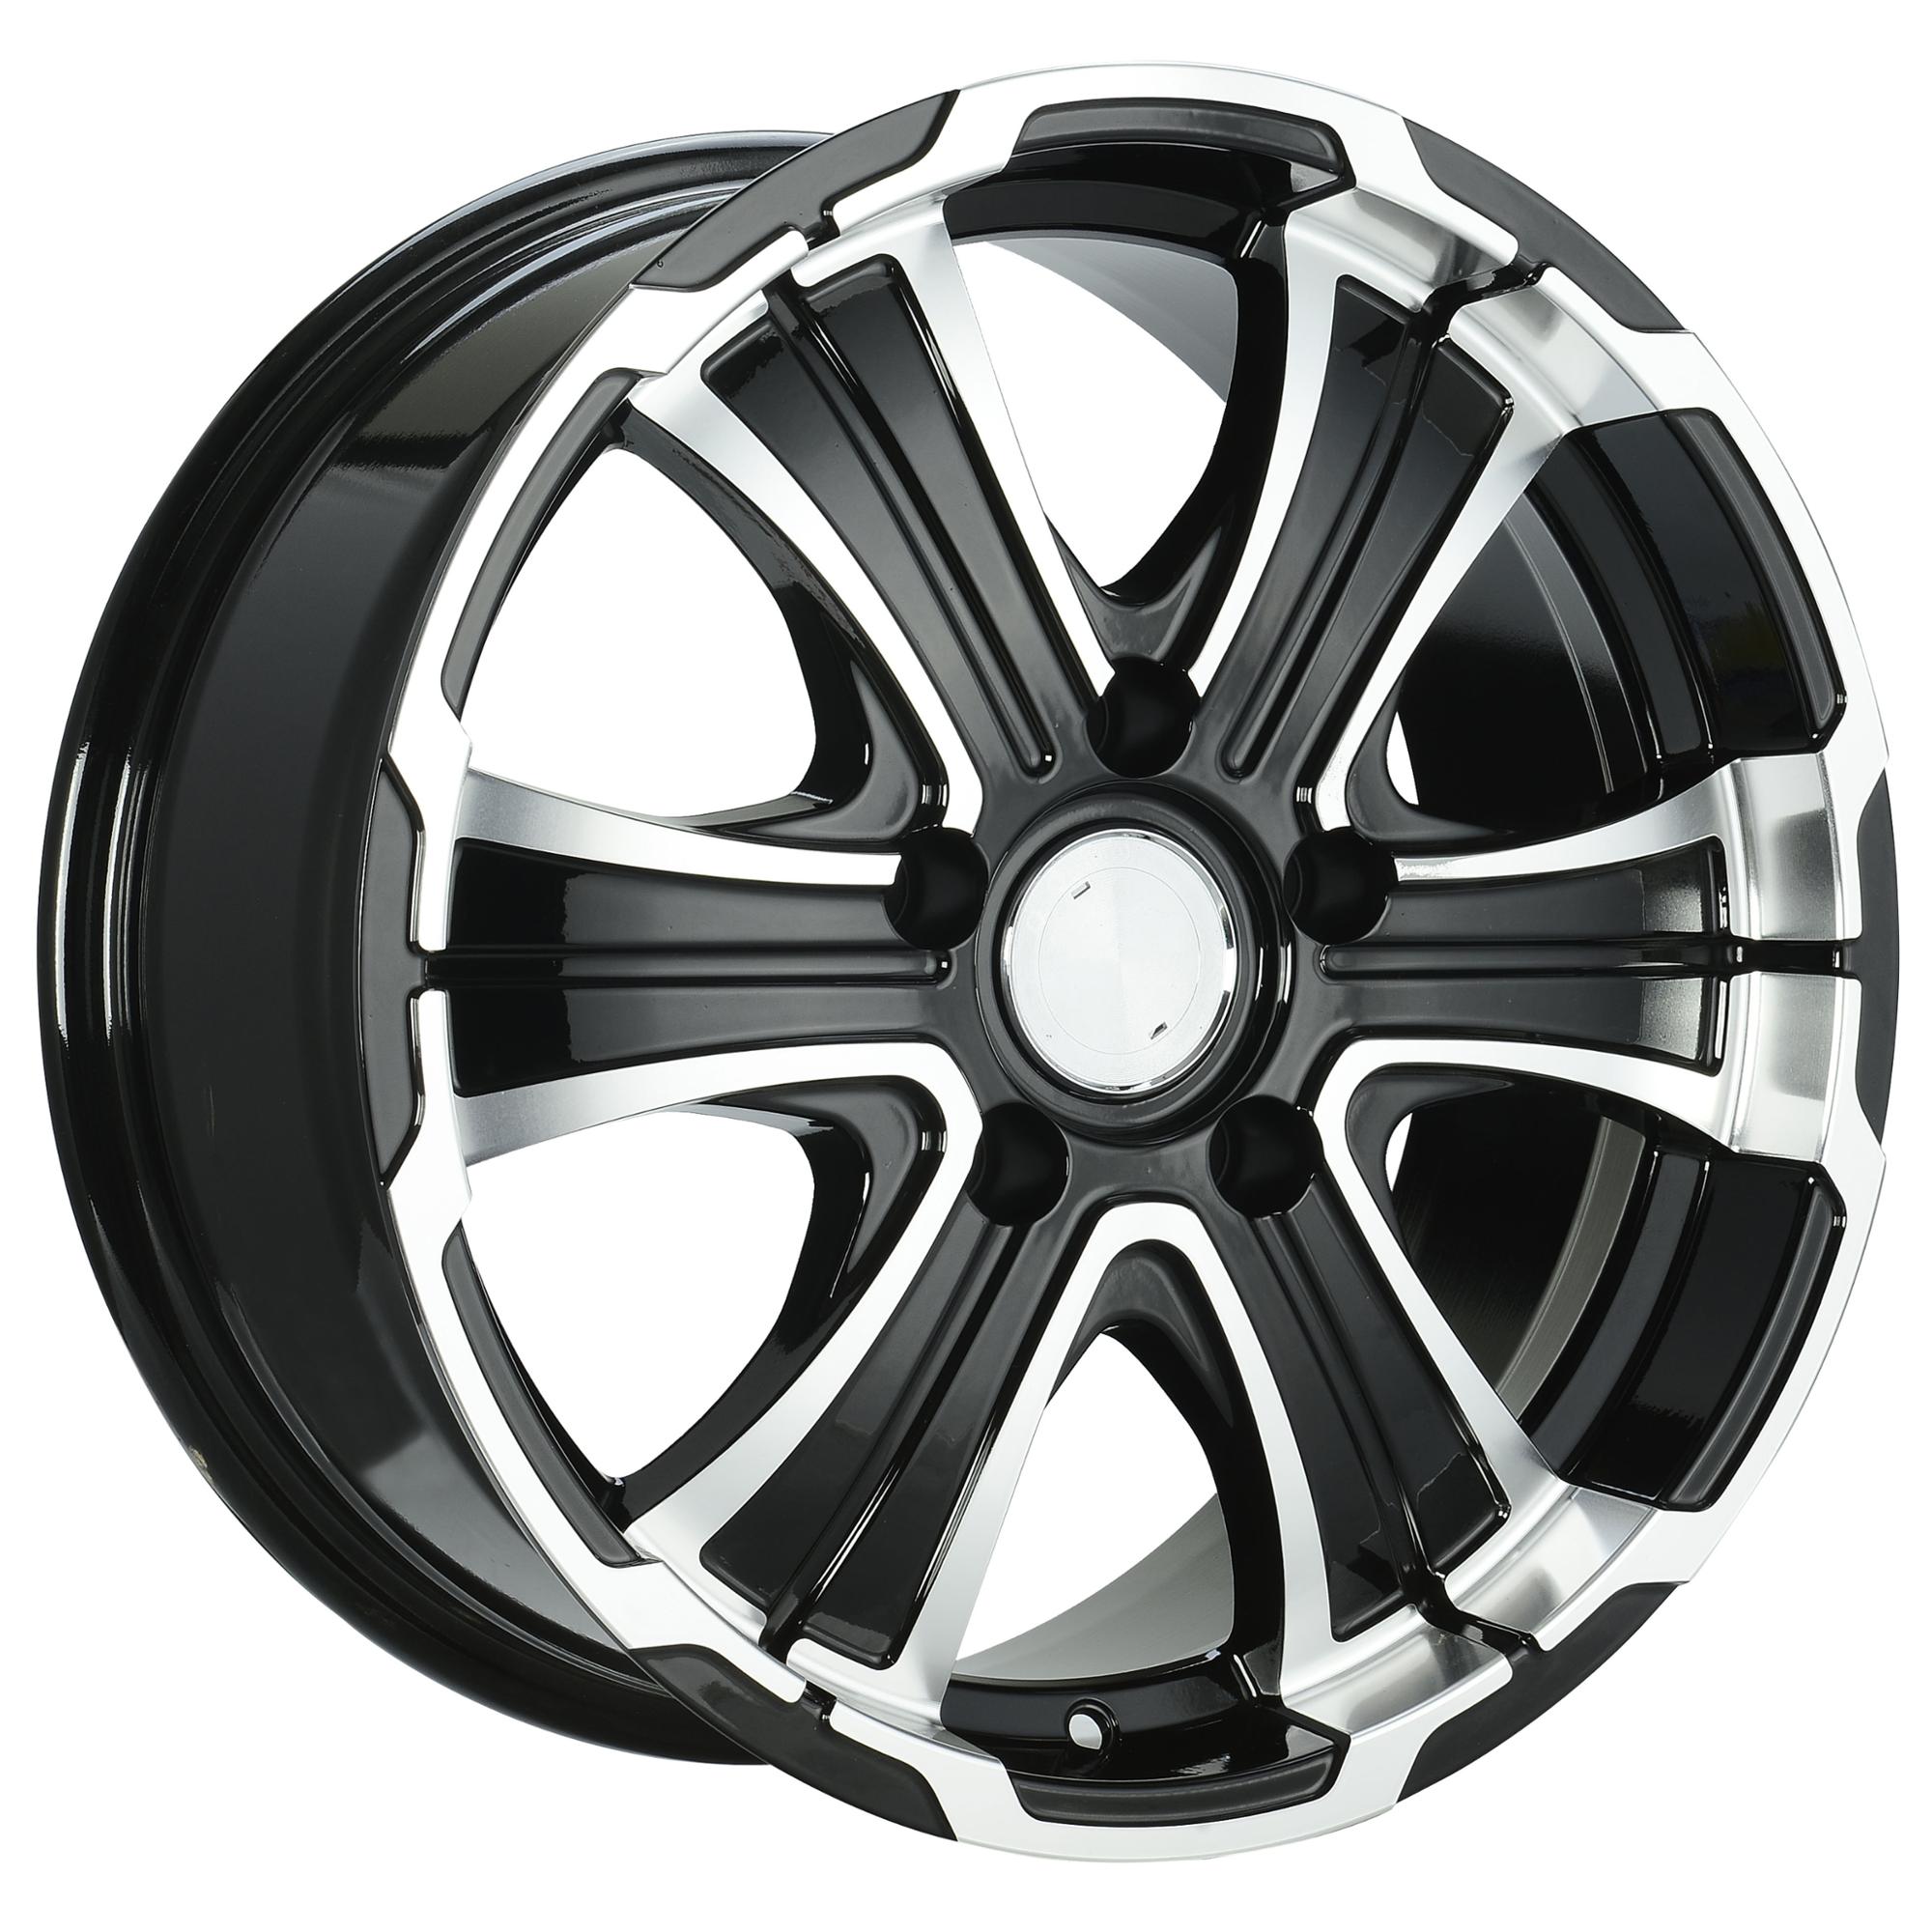 2018 hot sell aluminum alloy wheel hub, germany alloy wheel